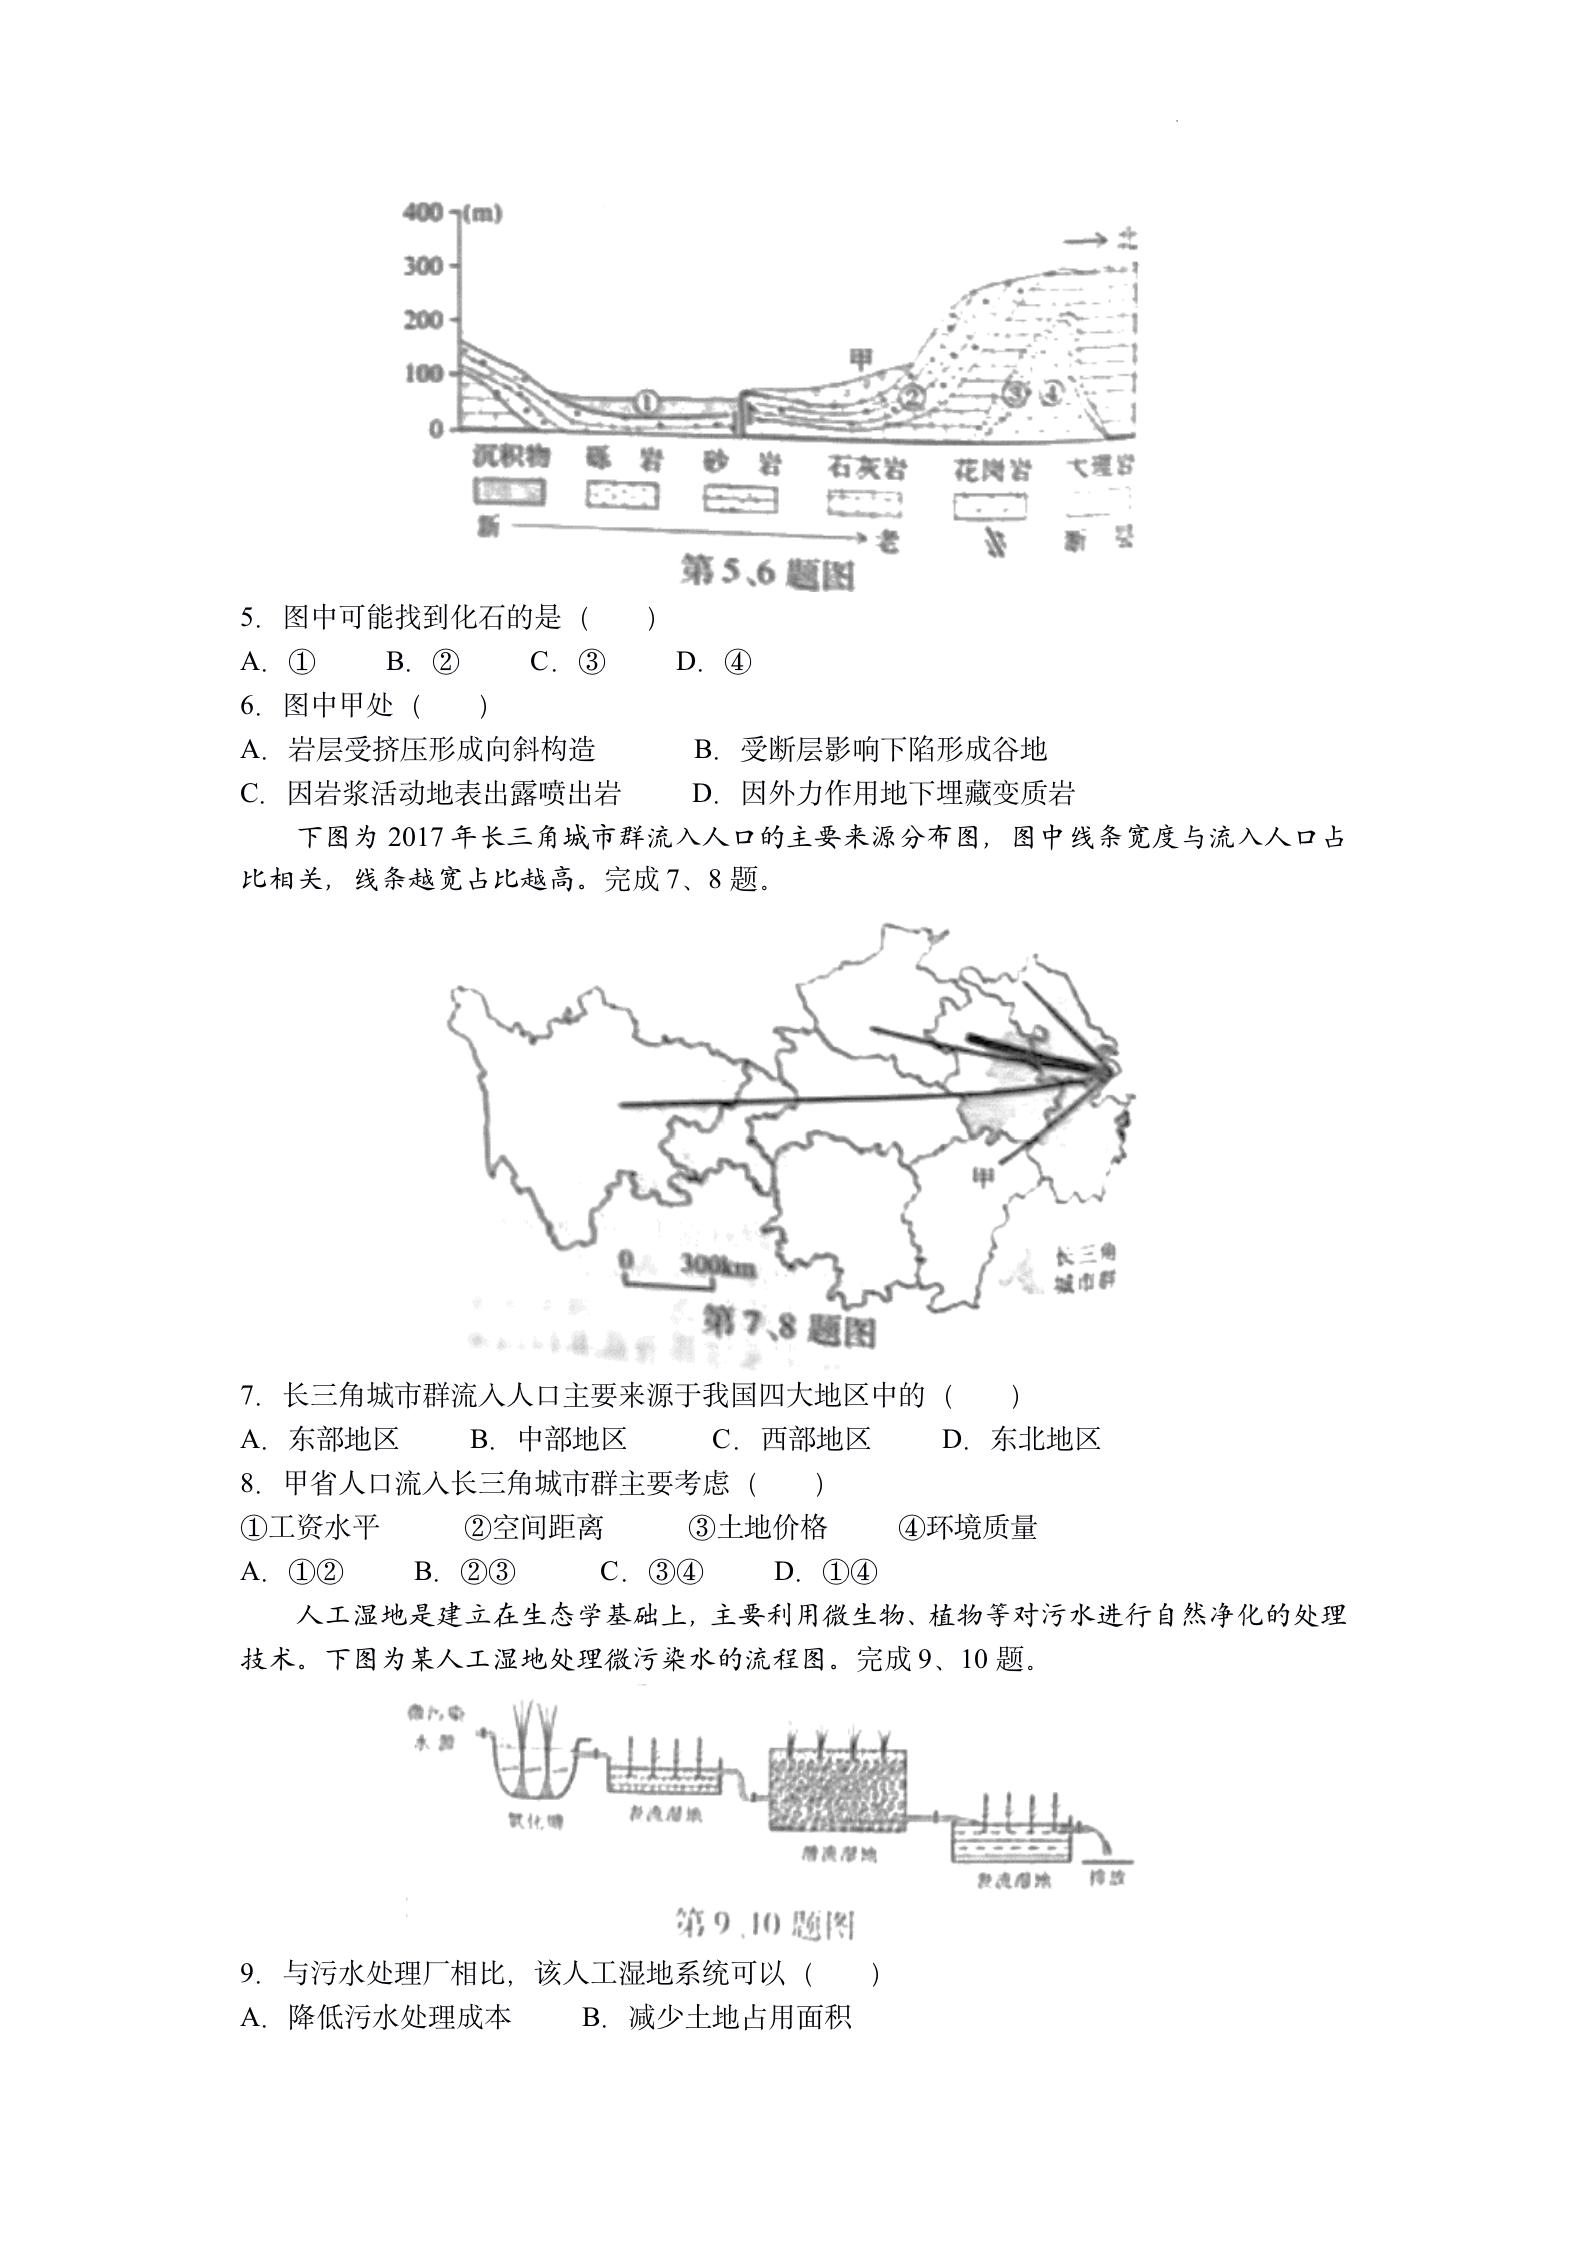 2022年浙江高考地理真题及答案已公布(完整版)